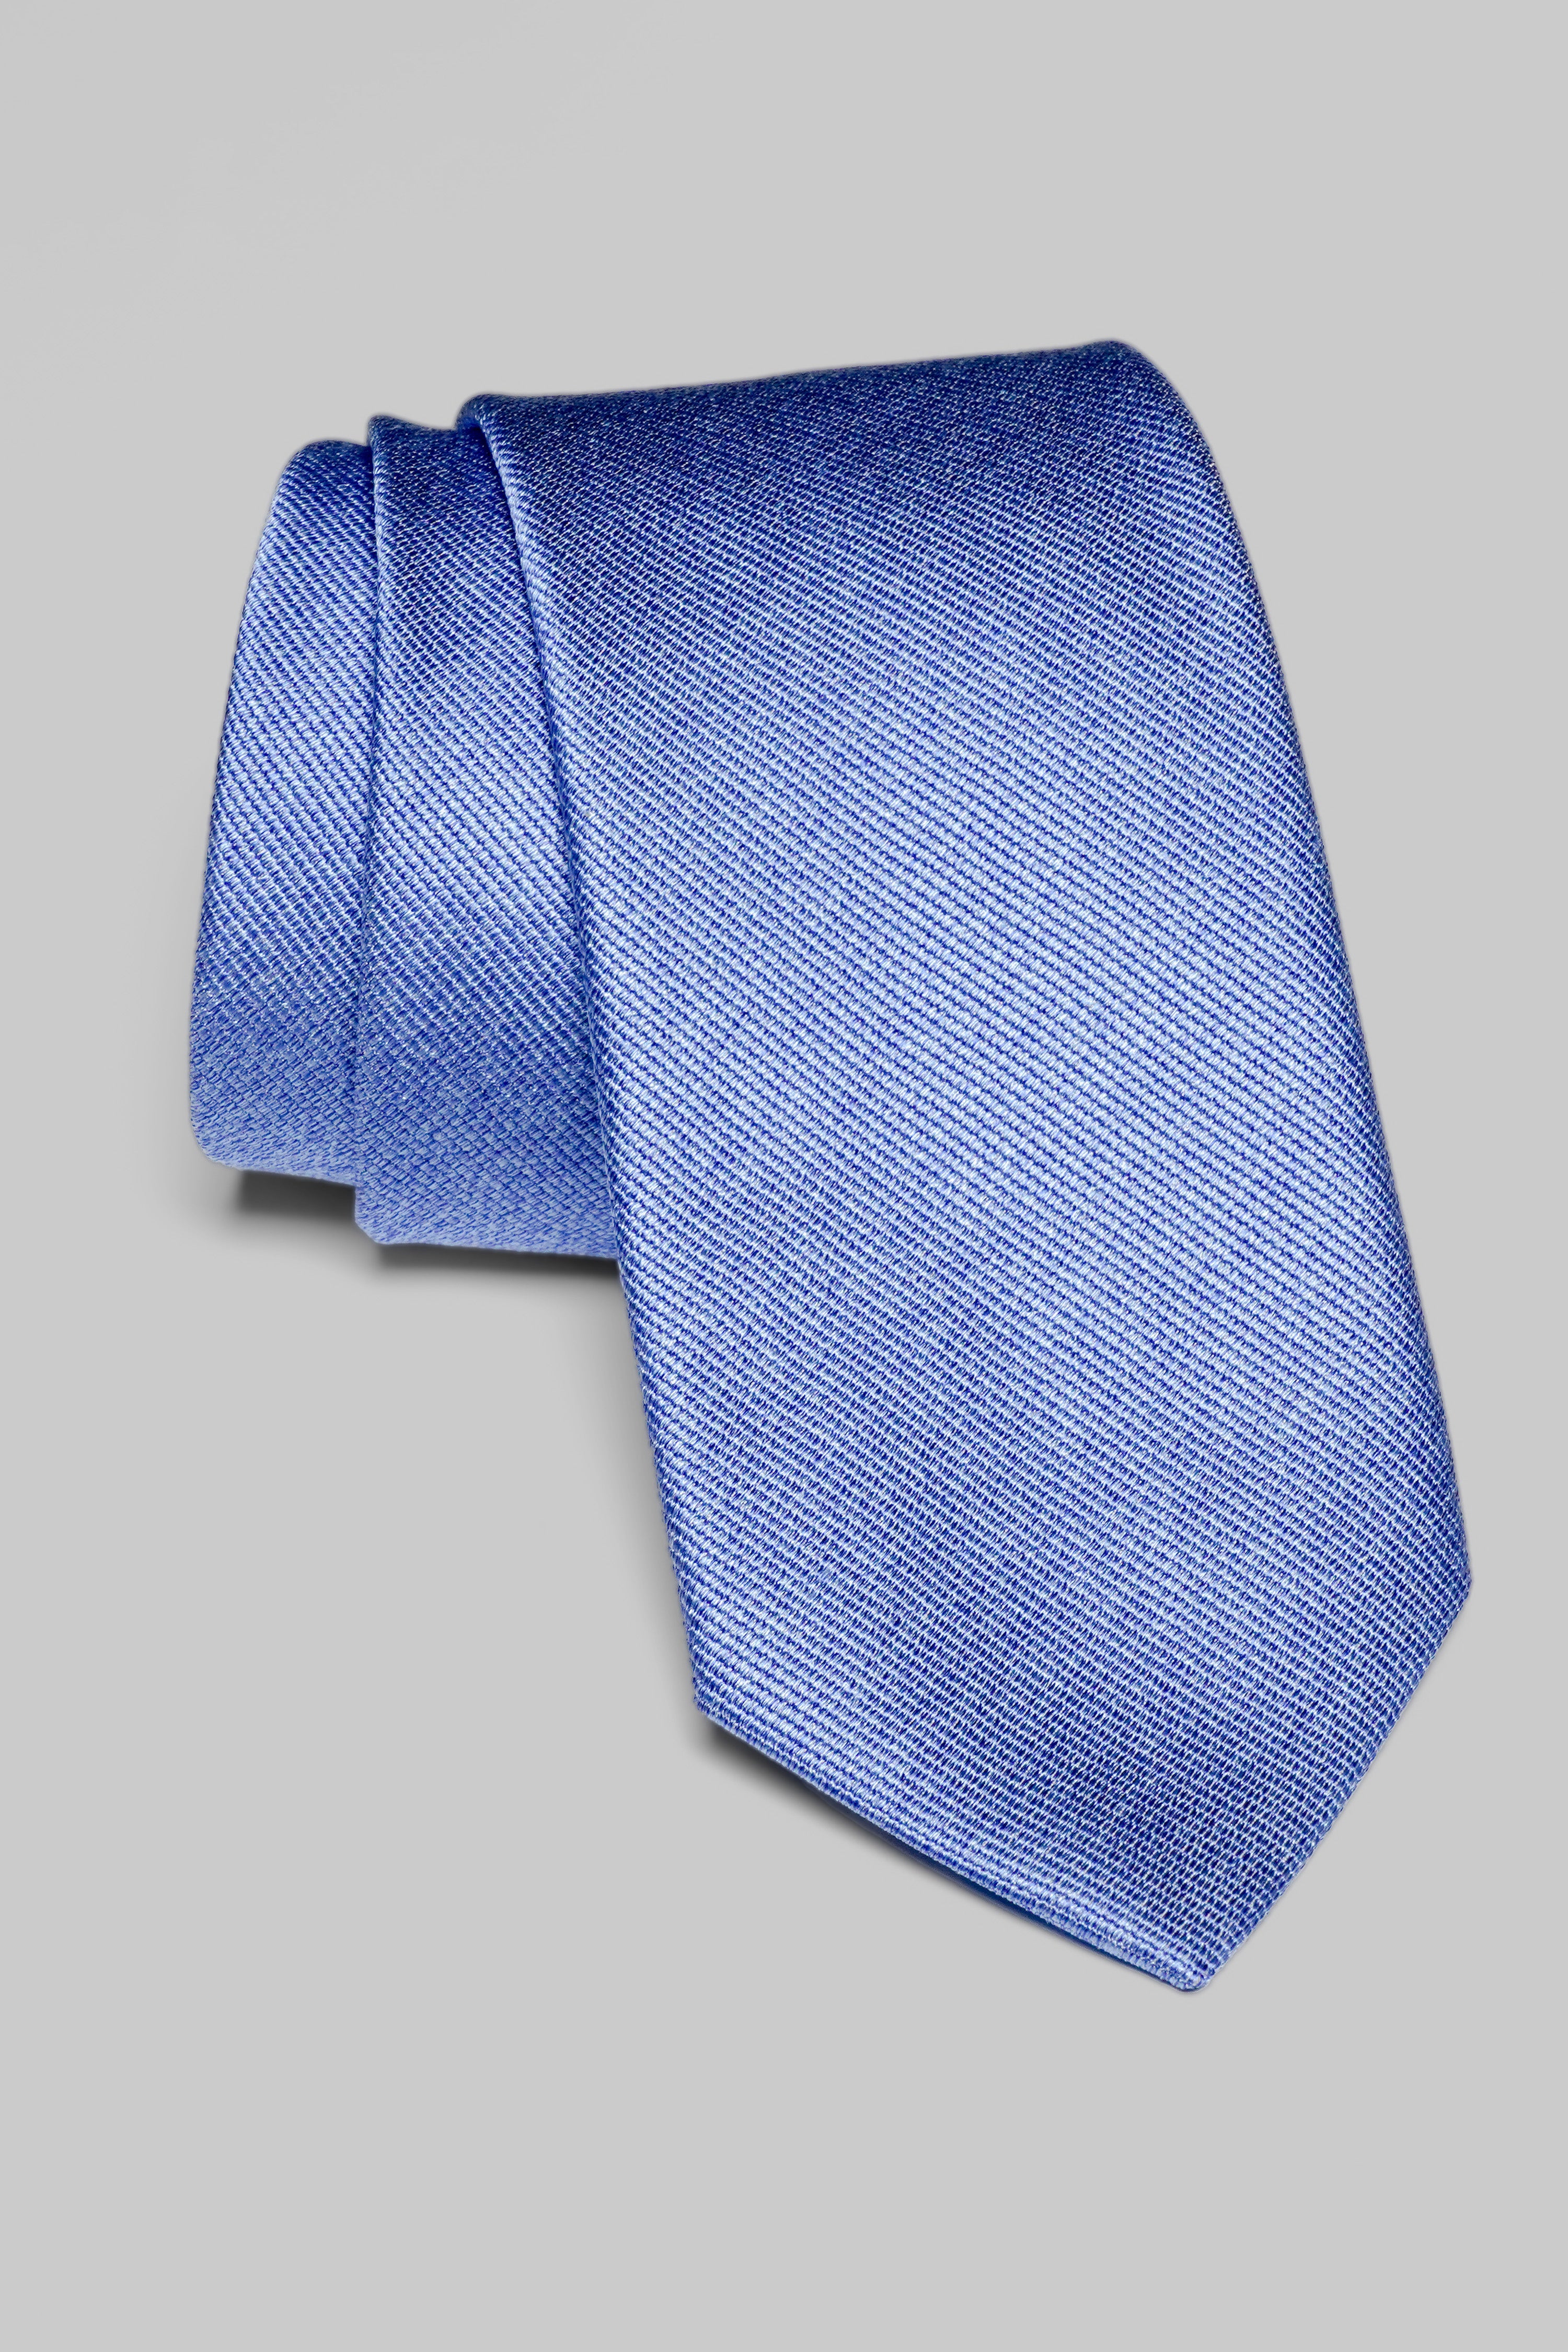 Vue alternative Bowman cravate tissée unie en bleu palais